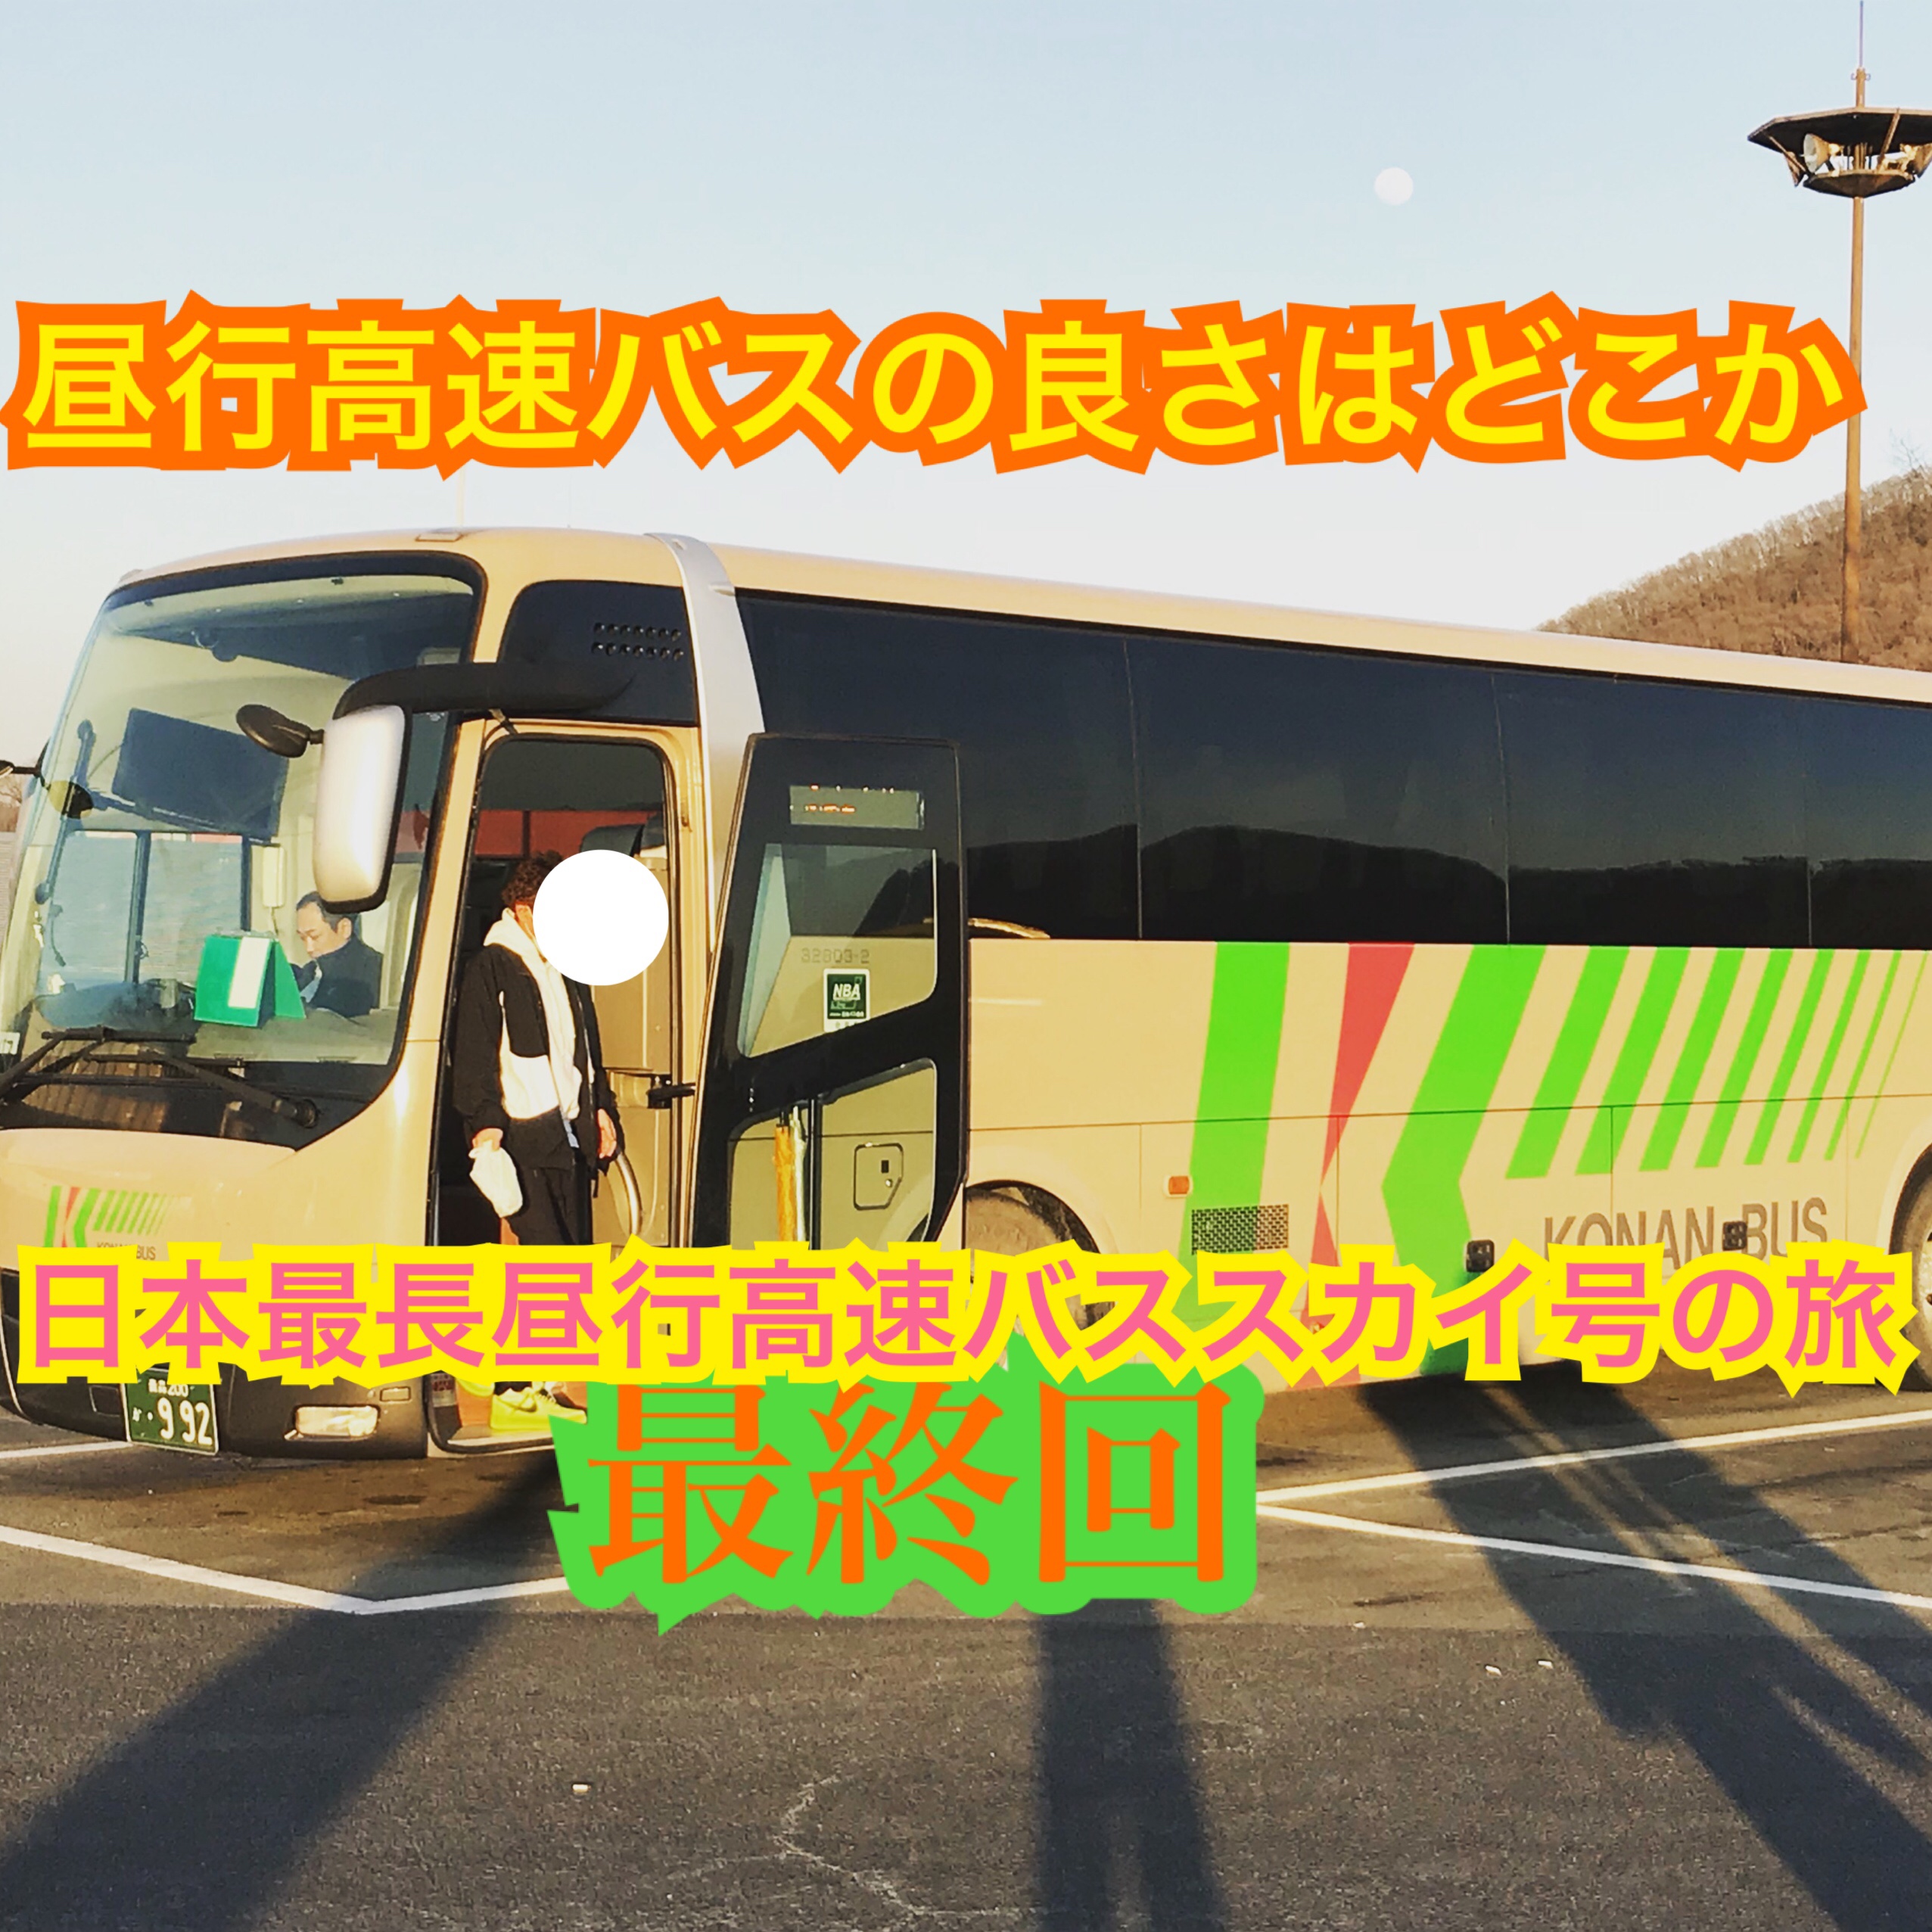 昼行高速バスの良さは何か。日本最長の昼行高速バス「スカイ号」に乗車！【雪国周遊旅】